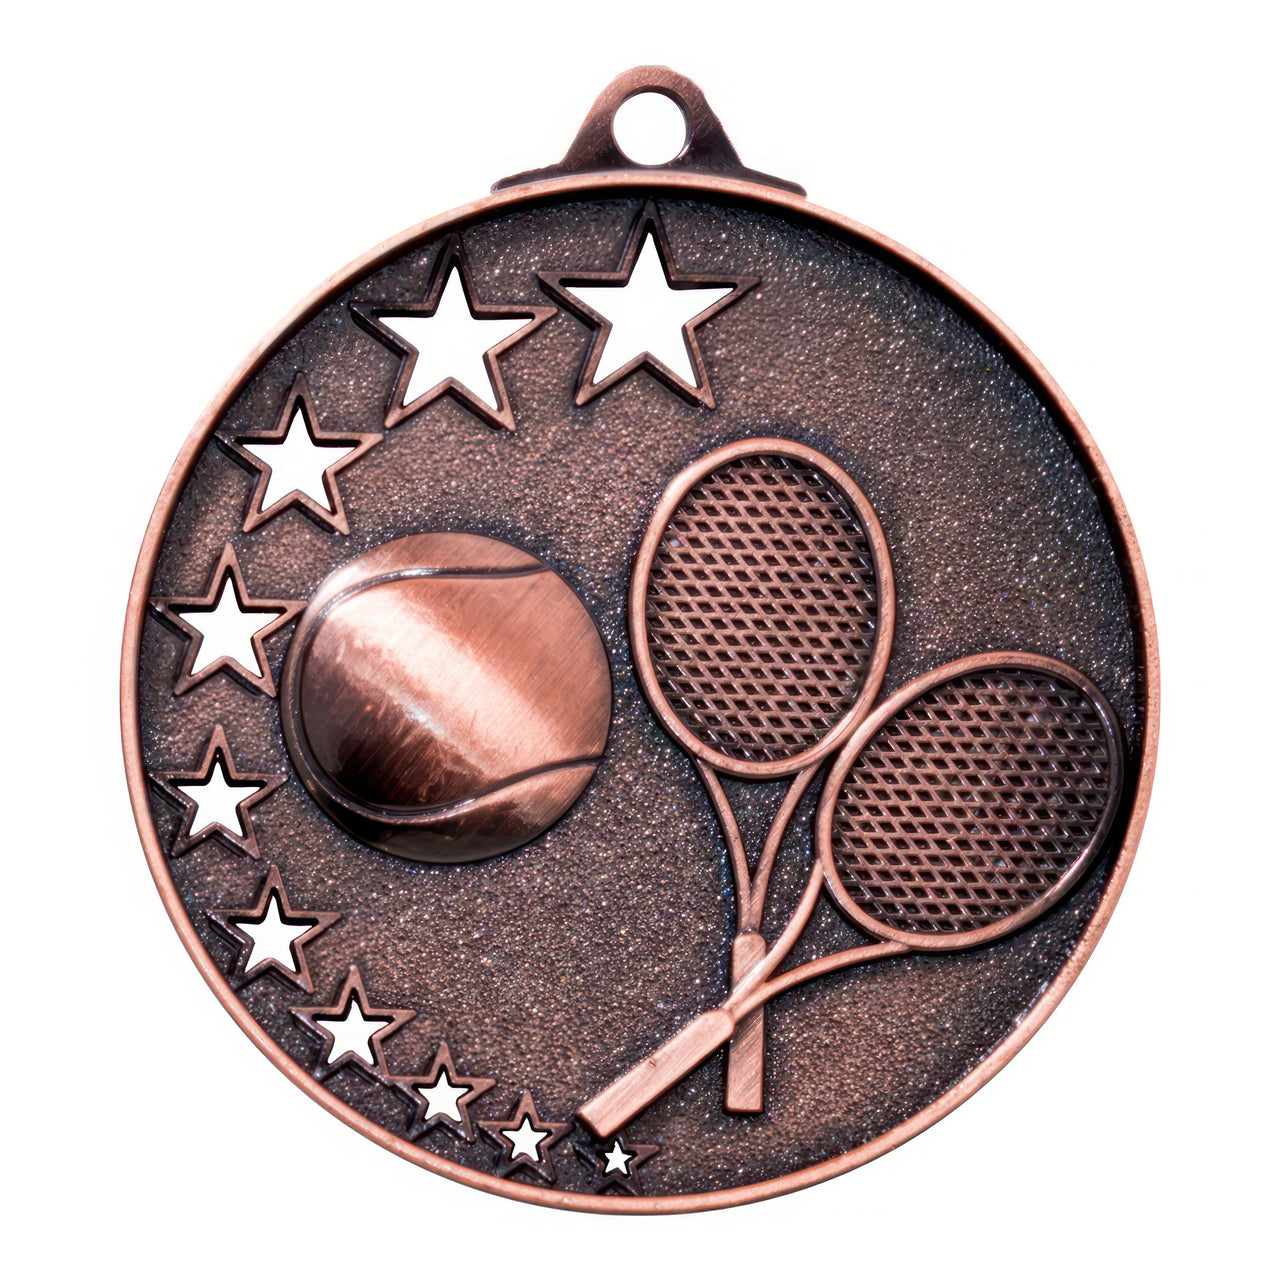 Tennis-Medaillen Magdeburg 52 mm PK79237 mit einem Tennisball, zwei Tennisschlägern und an den Rändern angeordneten Sternenmotiven bestechen durch exklusives Design und hochwertiges Material.